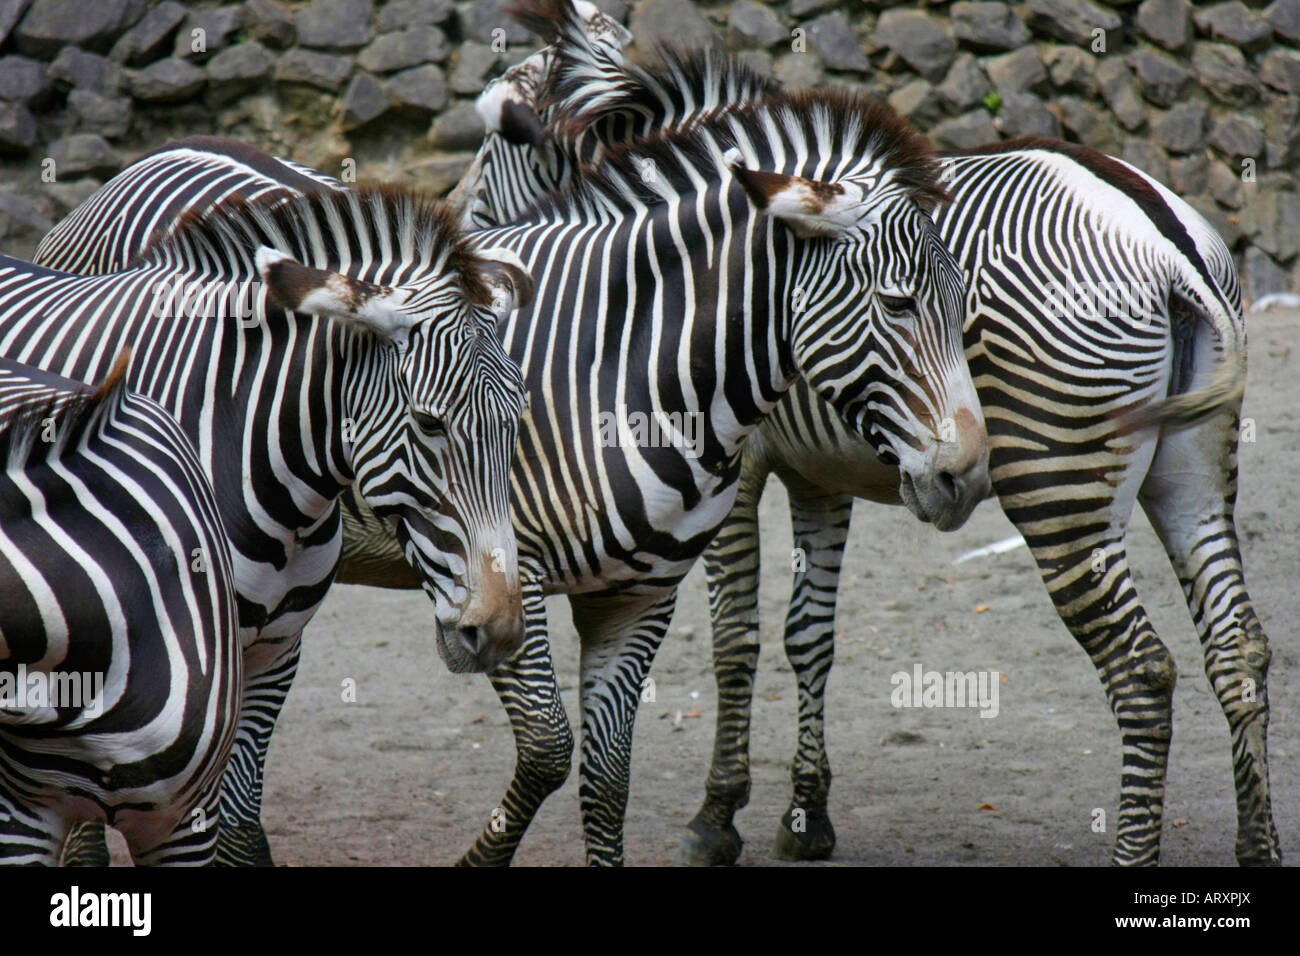 Zebras in the Zoo Stock Photo